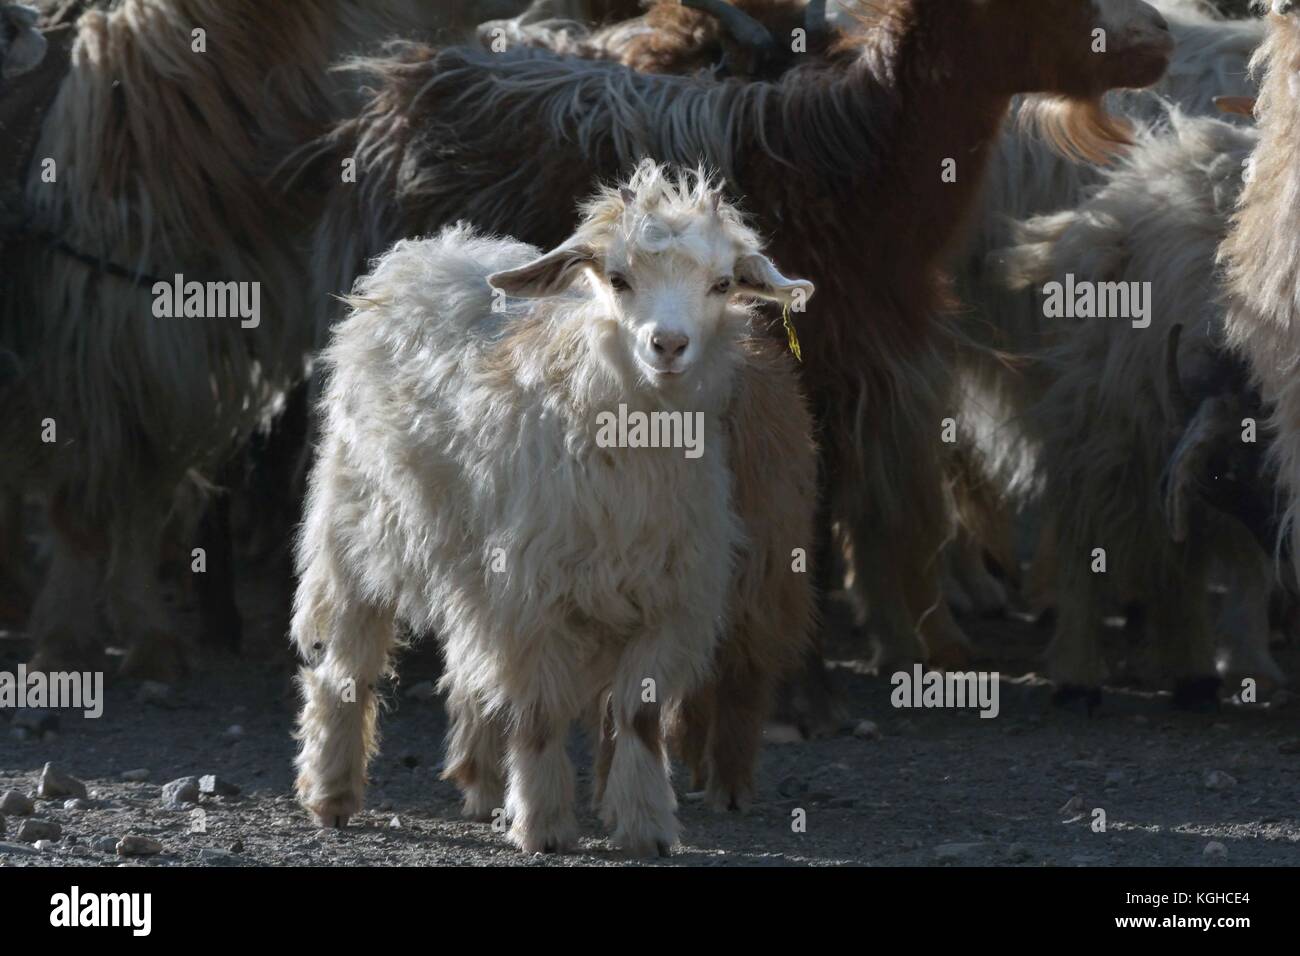 Petite chèvre blanche avec de la laine à poils bouclés, se tient en arrière-plan un troupeau de chèvres. Banque D'Images